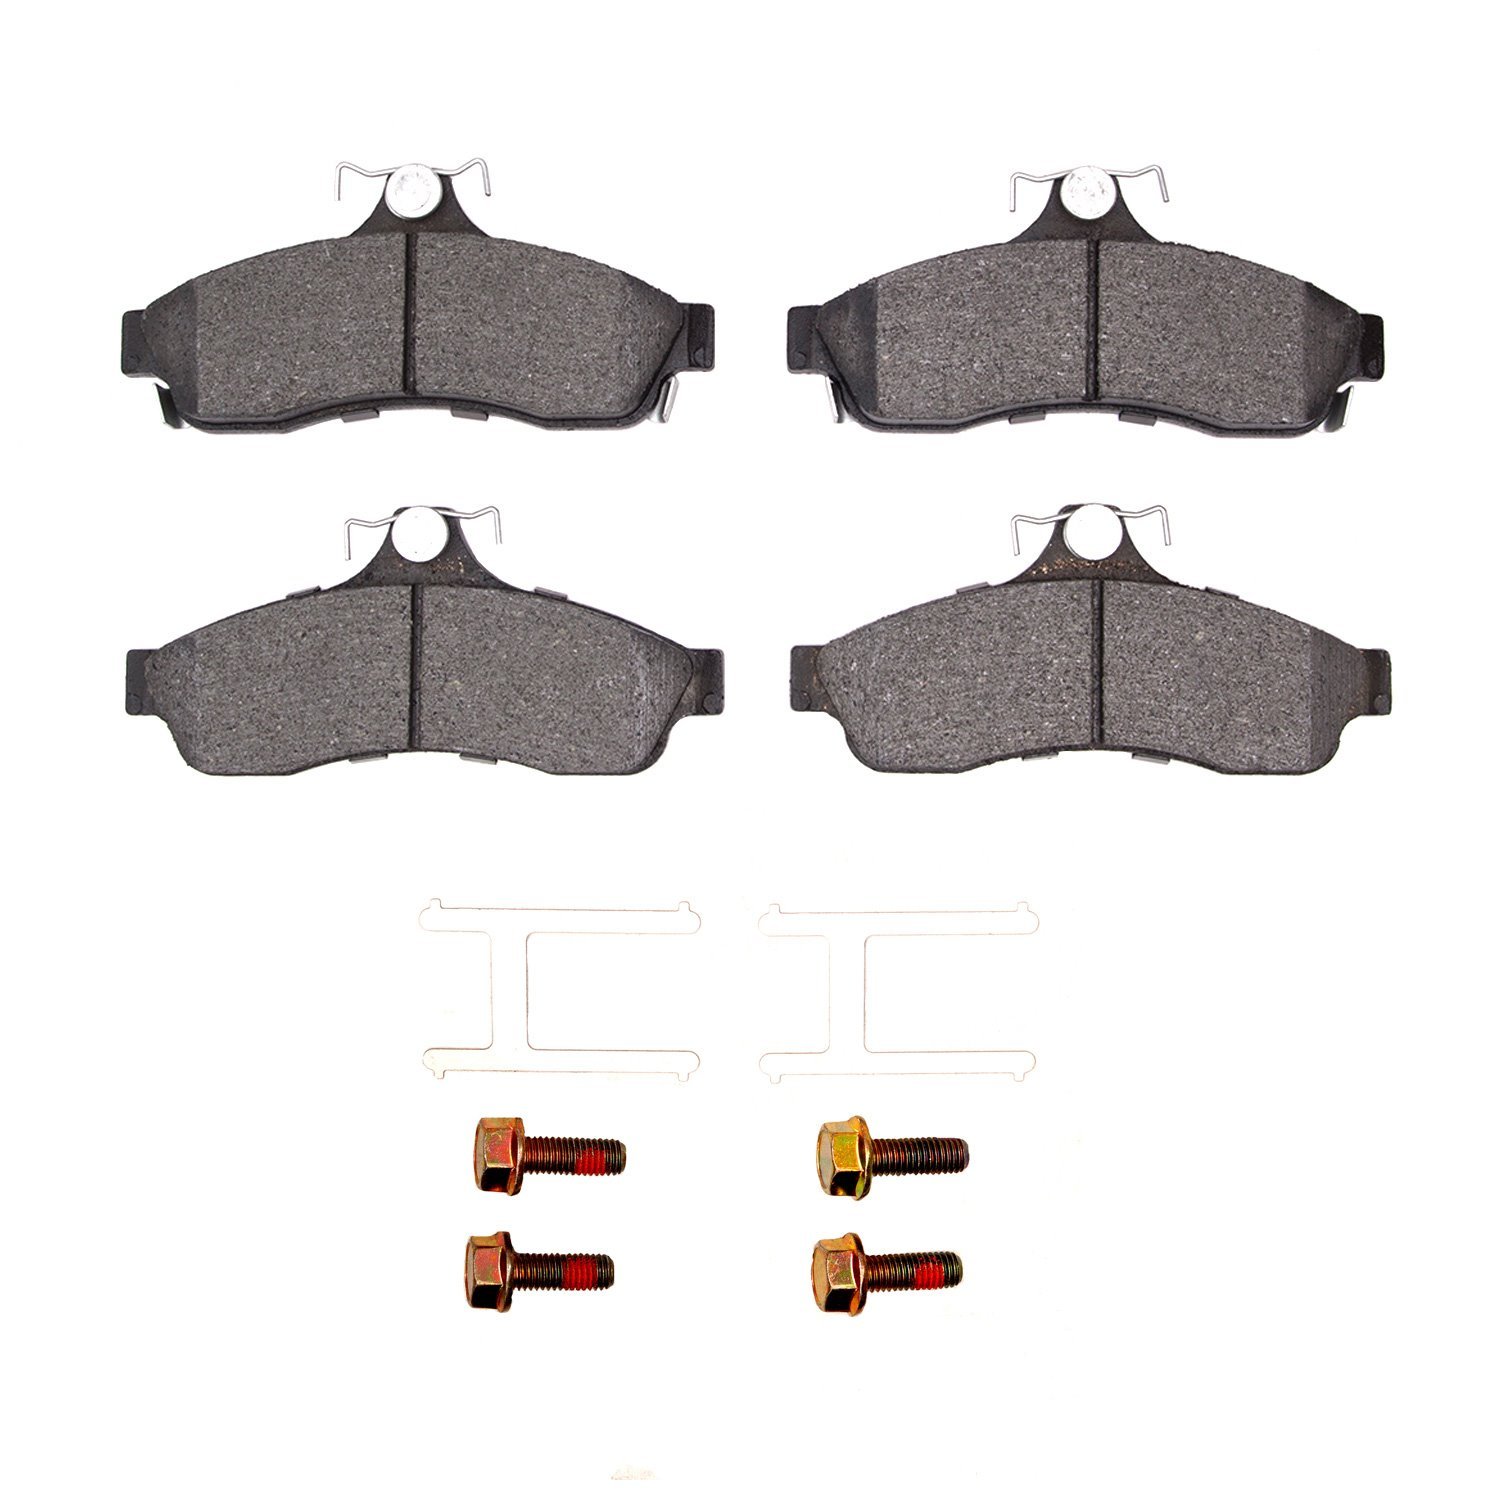 1310-0628-01 3000-Series Ceramic Brake Pads & Hardware Kit, 1994-1996 GM, Position: Rear